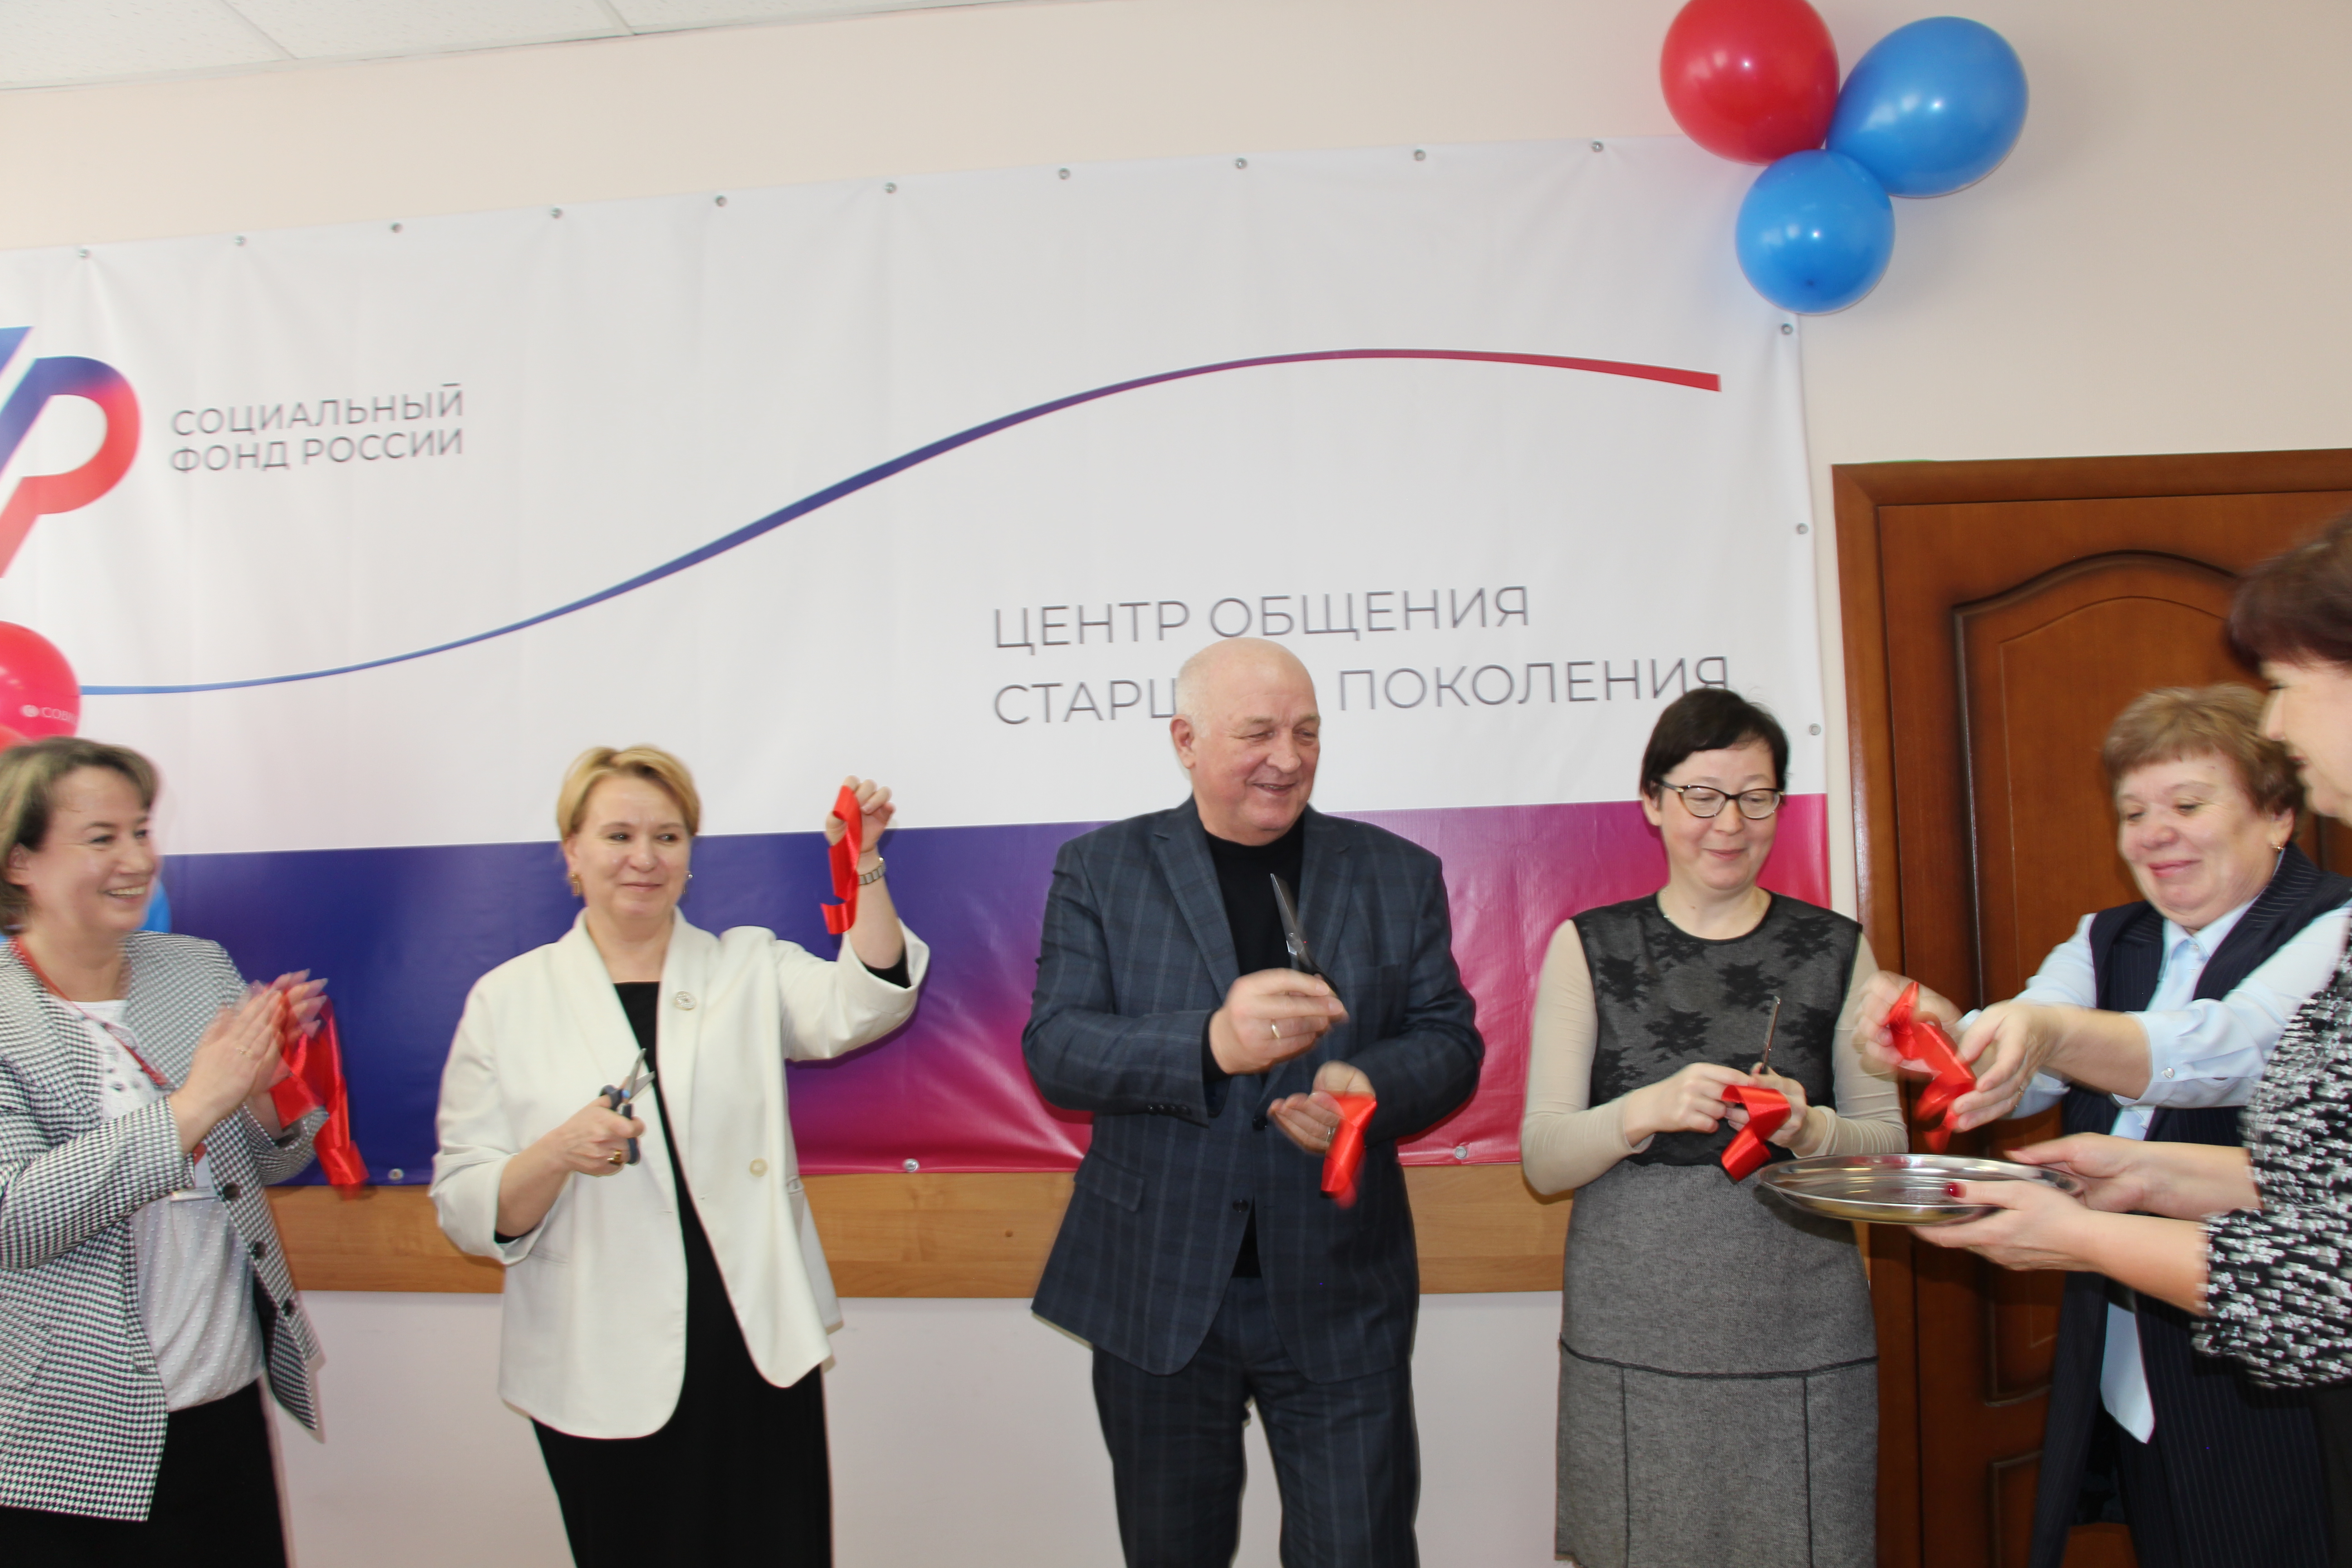 Отделение СФР по Вологодской области открыло четвертый в регионе Центр общения старшего поколения.